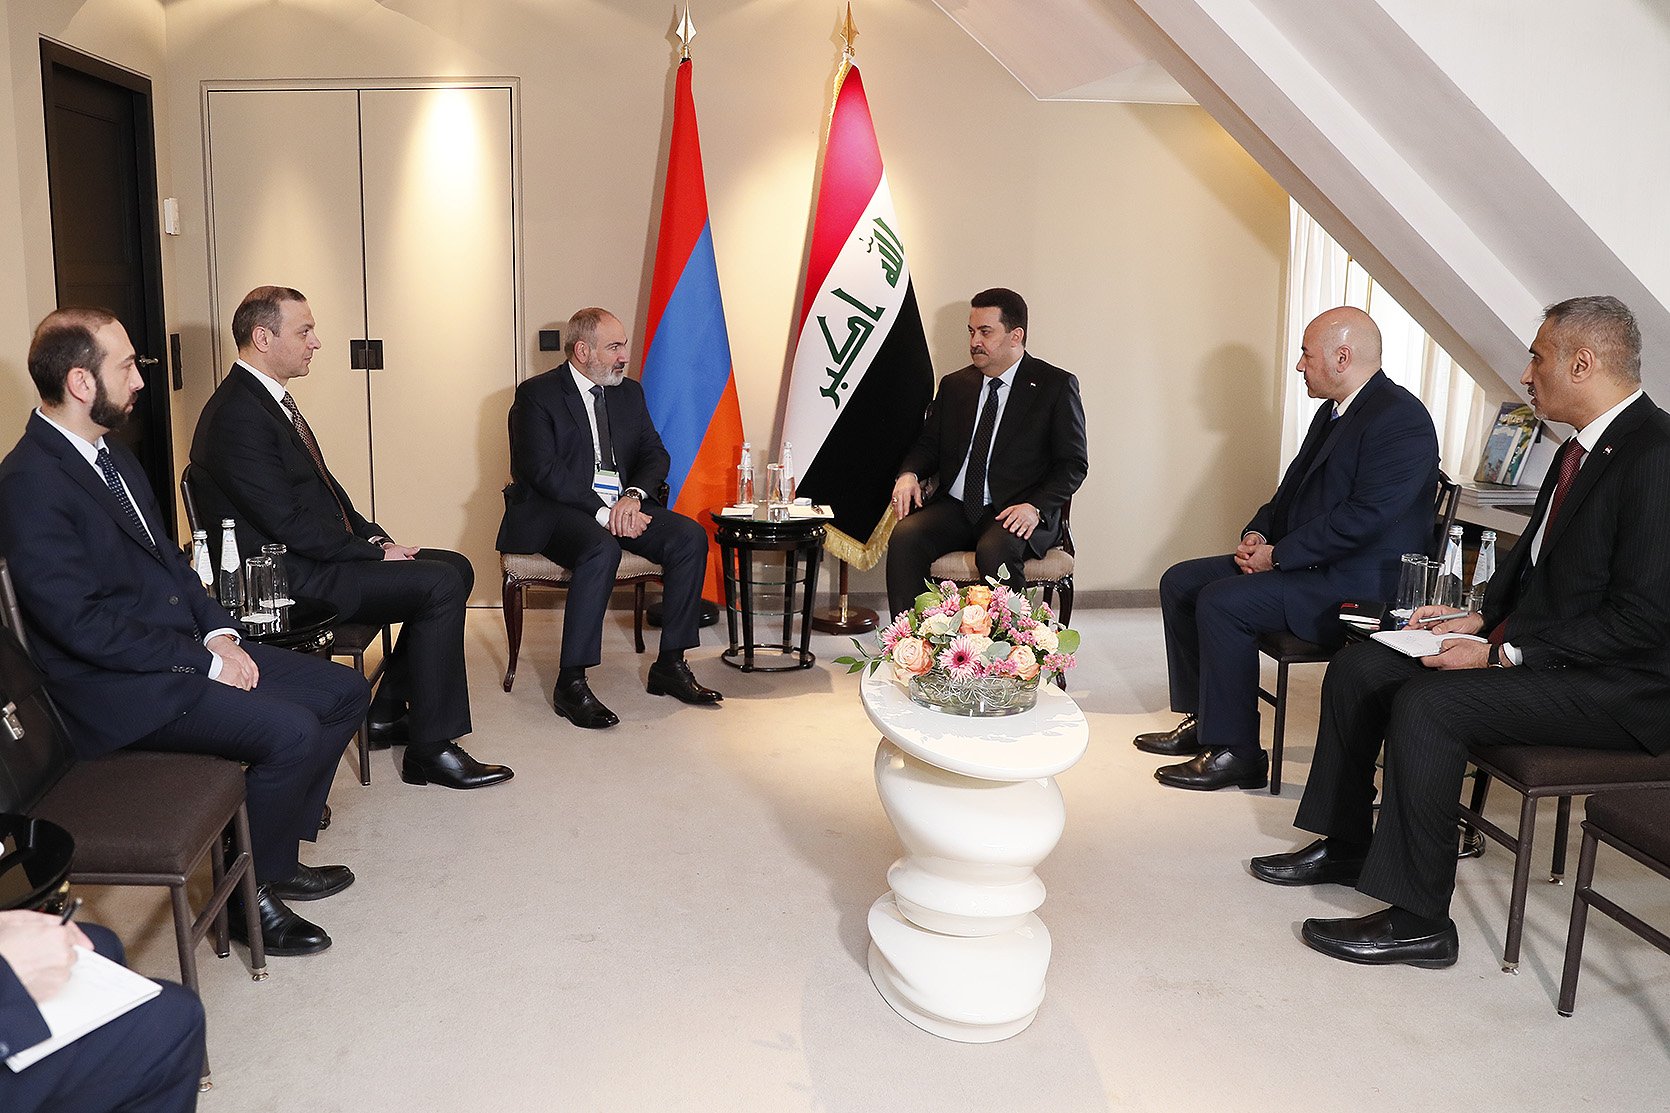 Վարչապետ Փաշինյանը հանդիպում է ունեցել Իրաքի վարչապետ Մոհամմեդ Շիա Սուդանի հետ